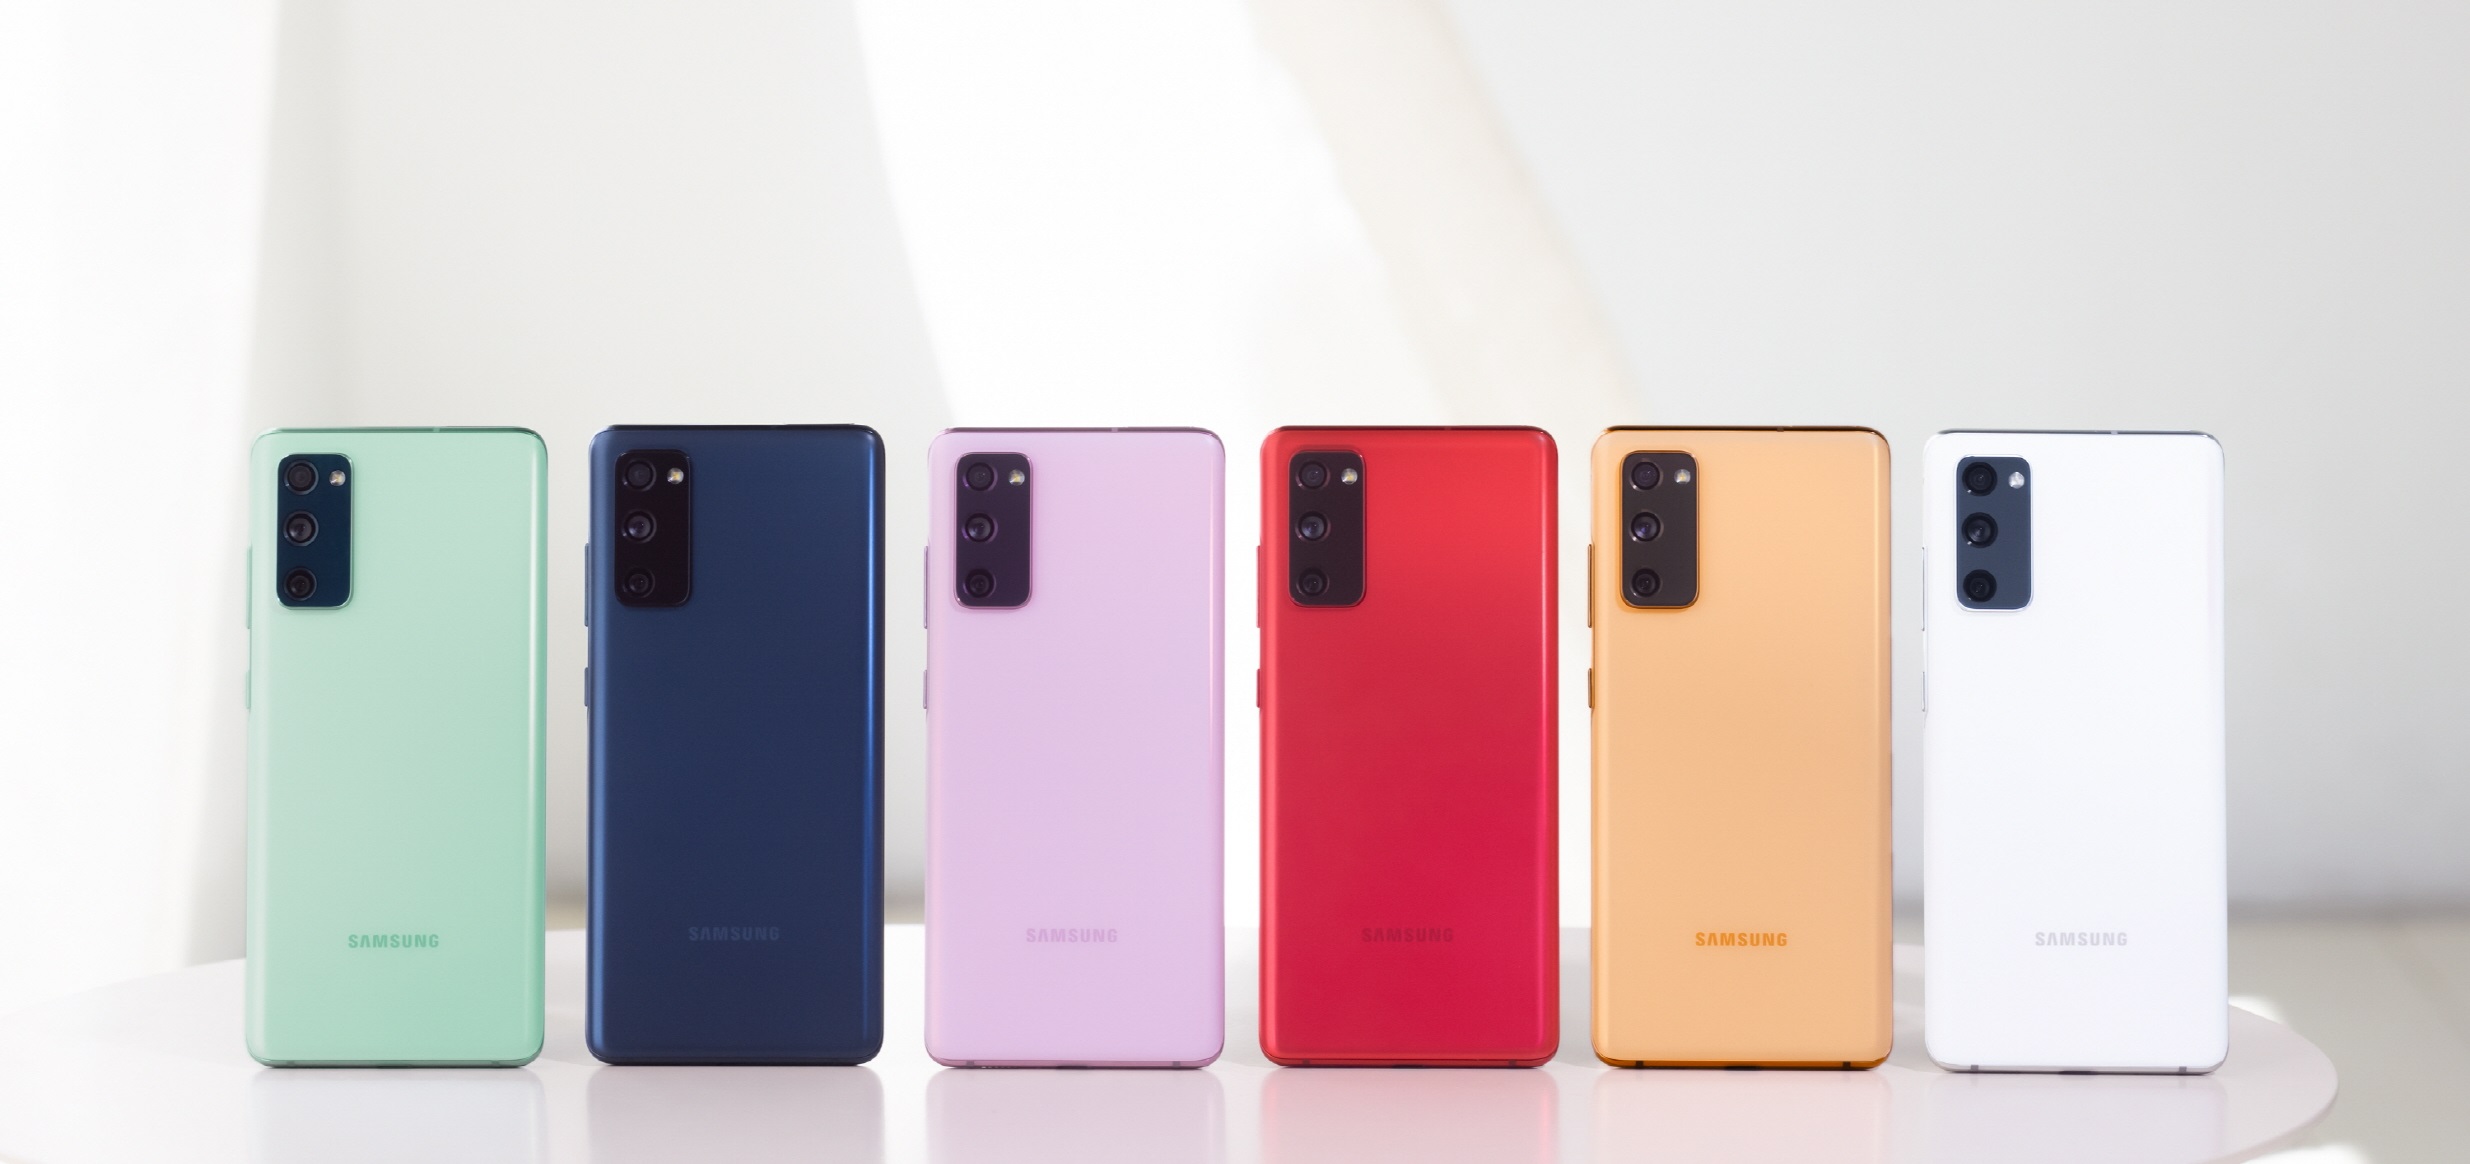 Samsung sprzedał ponad 10 milionów smartfonów Galaxy S20 FE, jeden z najlepiej działających modeli Galaxy w 2021 r.